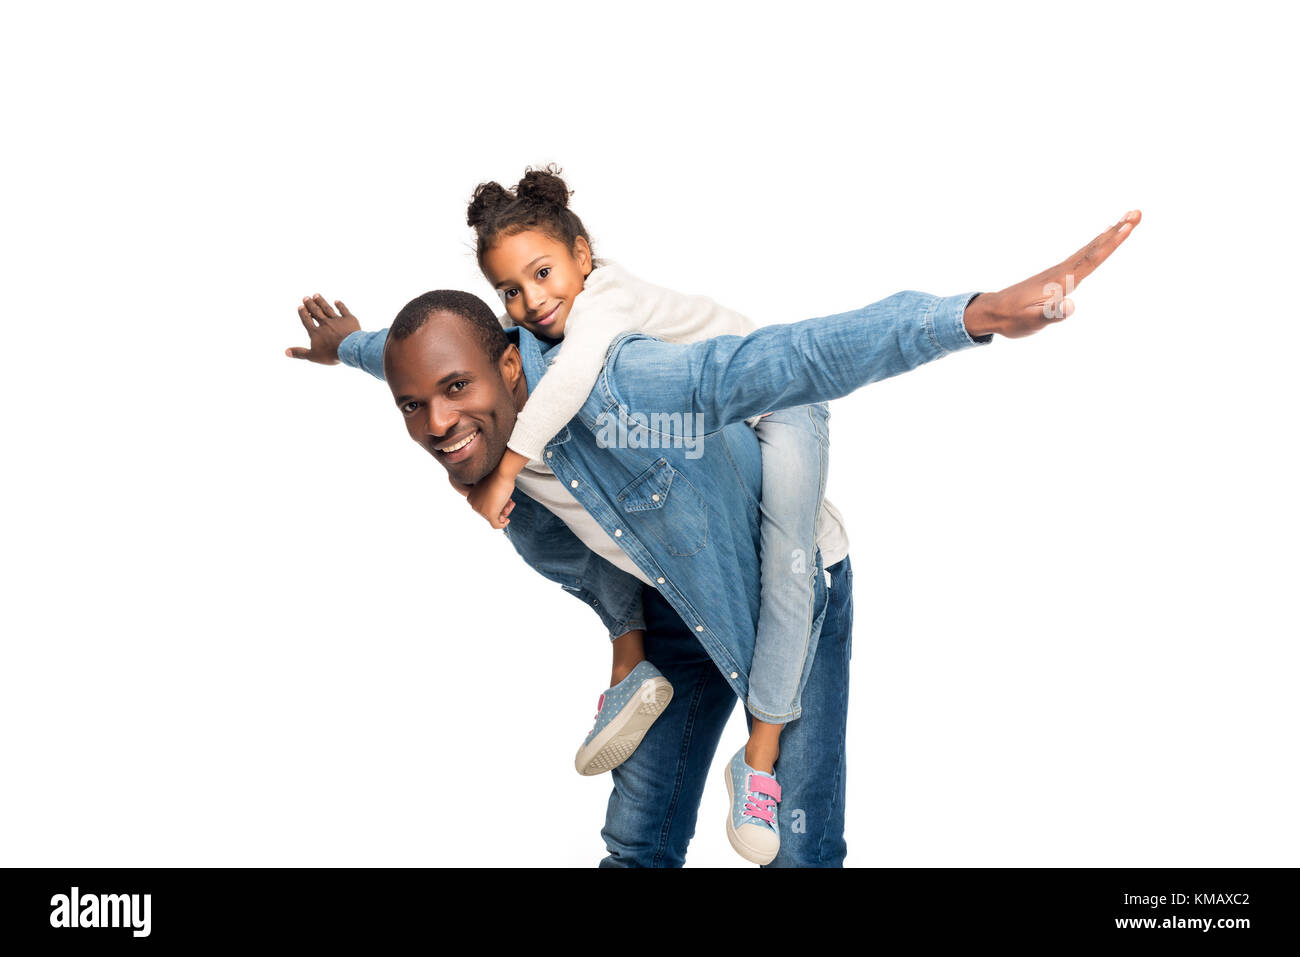 father piggybacking daughter Stock Photo